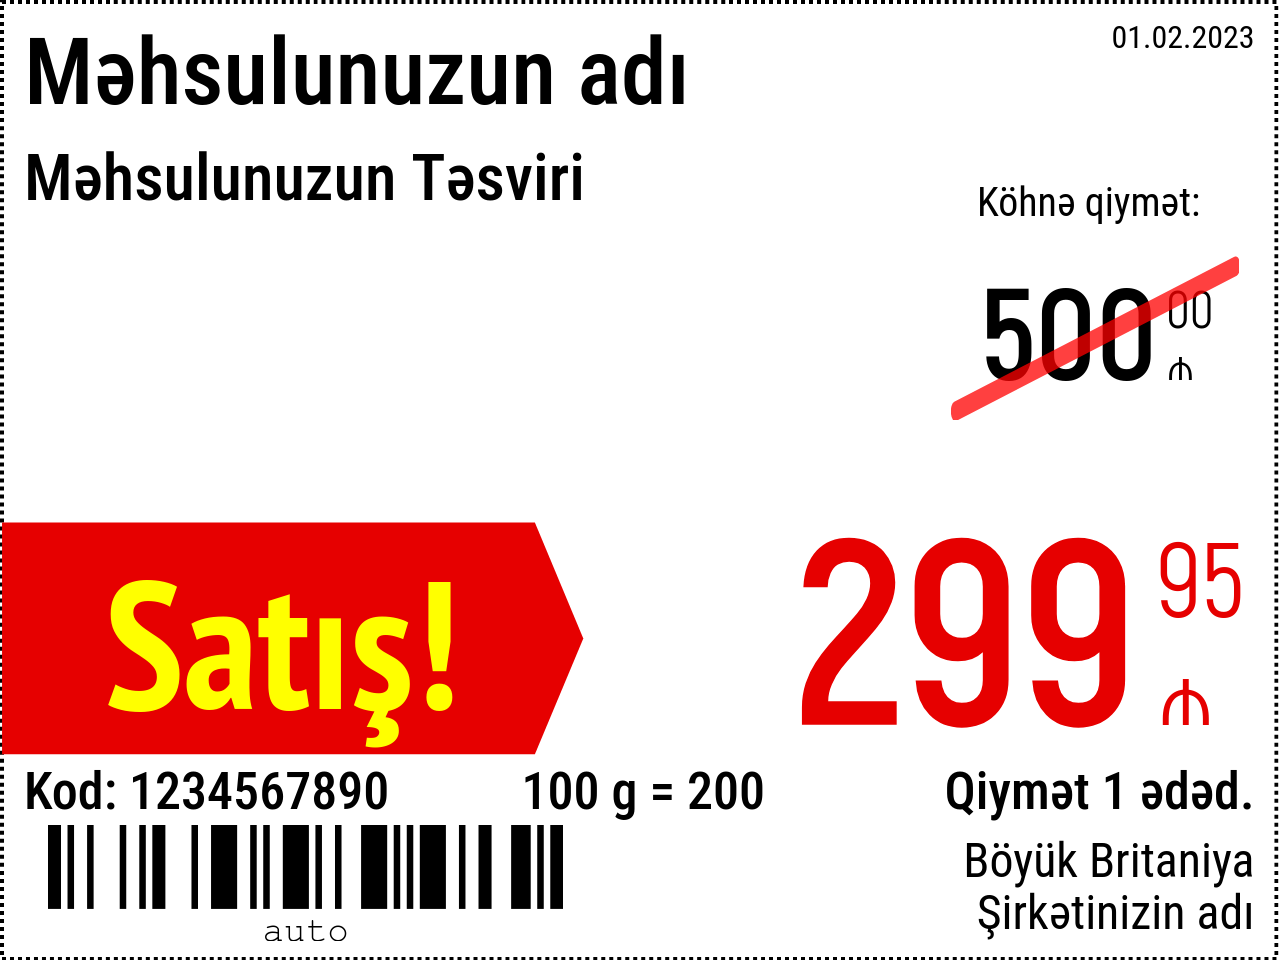 Qiymət etiketi Yeni / 8x6 / Reklam 2